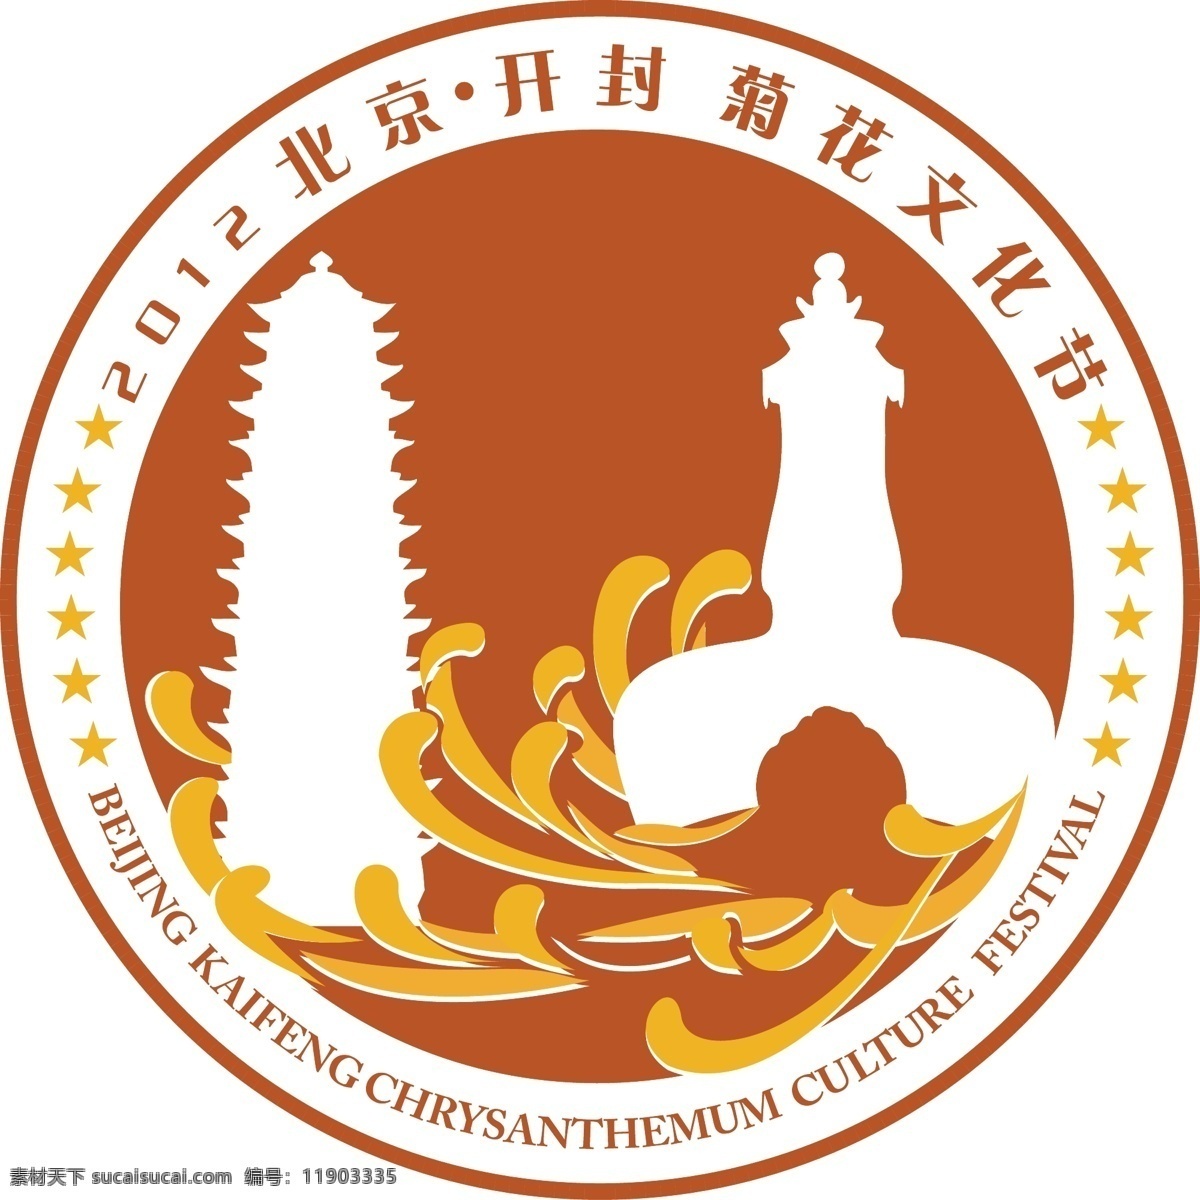 北京 开封 菊花 文化节 标志 logo设计 节日 创意设计 白色 红色 黄色 矢量素材 矢量图 标识设计 叶子 文化